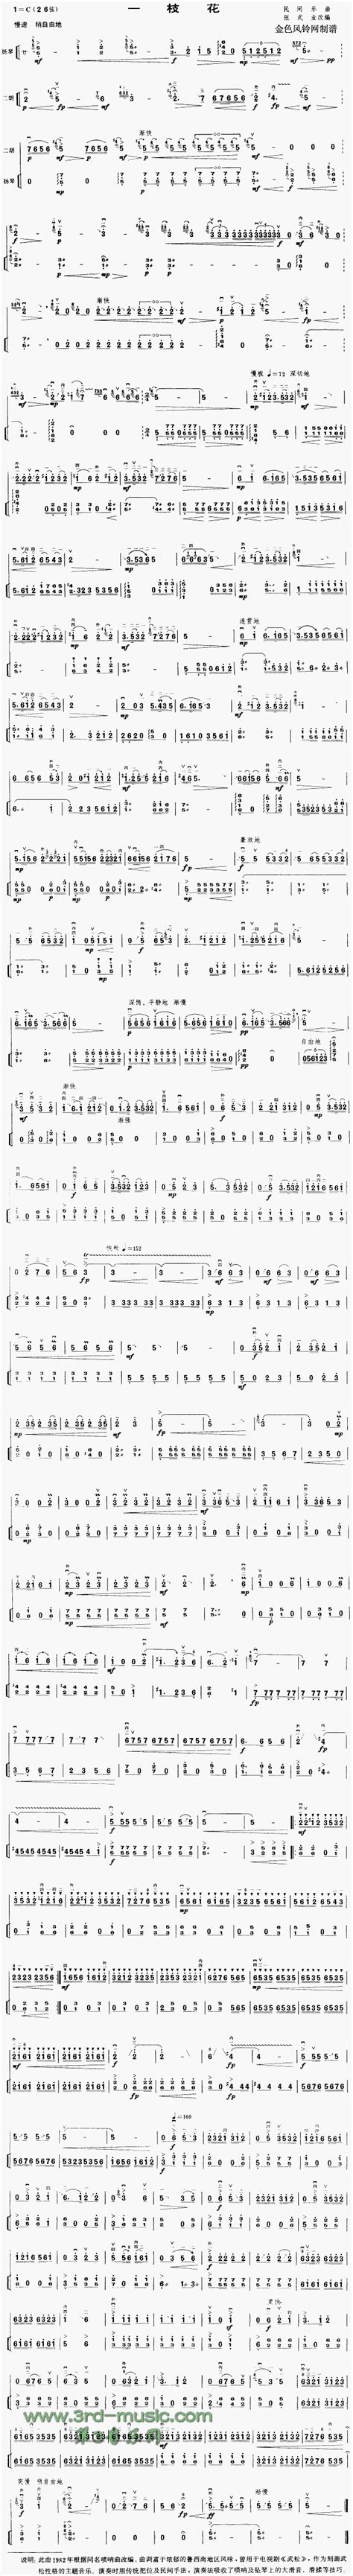 二胡曲谱《一枝花》 | 乐器教程网